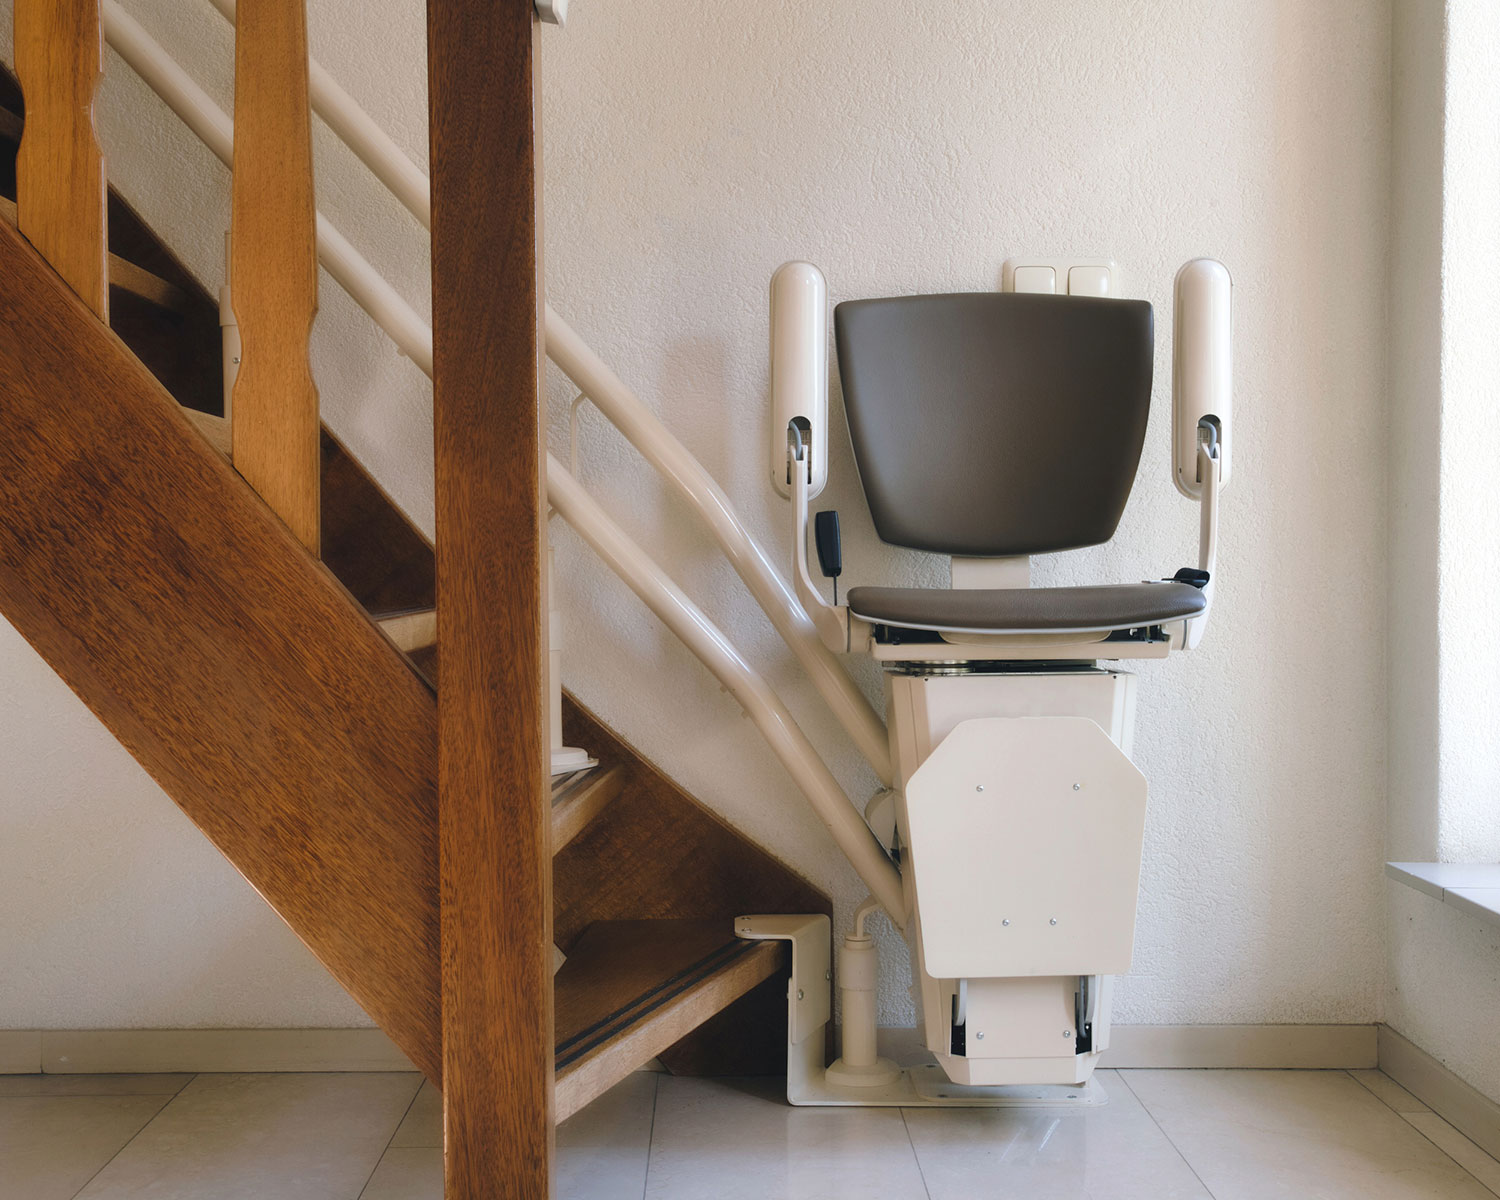 Sitzlift: Sicher & platzsparend. Ideal für jede Treppe. Vergleich & Finanzierungstipps. Für ihr barrierefreies Zuhause!